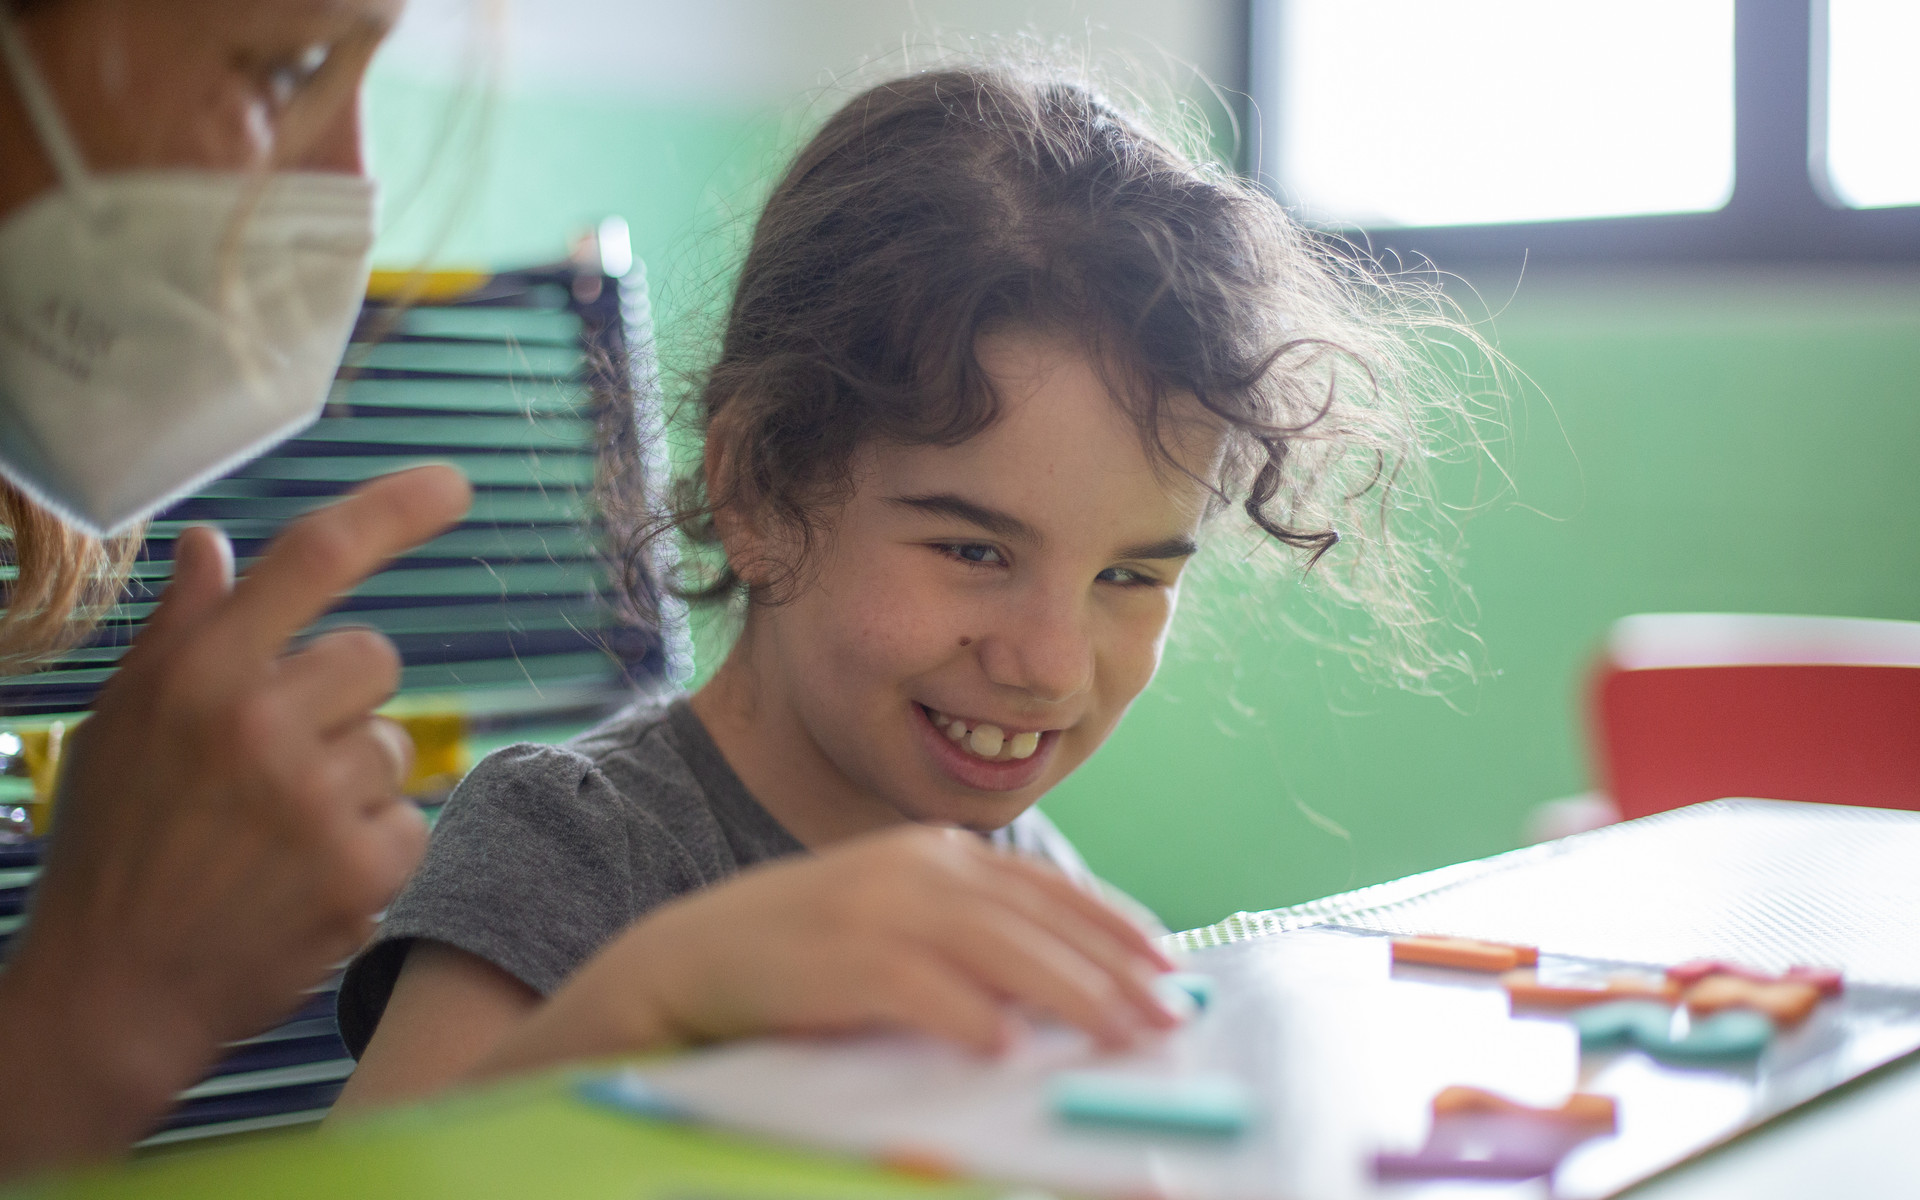 La piccola Giulia, utente della Lega, sorride mentre è al lavoro con l'educatrice davanti ad un tavolo e sposta lettere e numeri calamitati